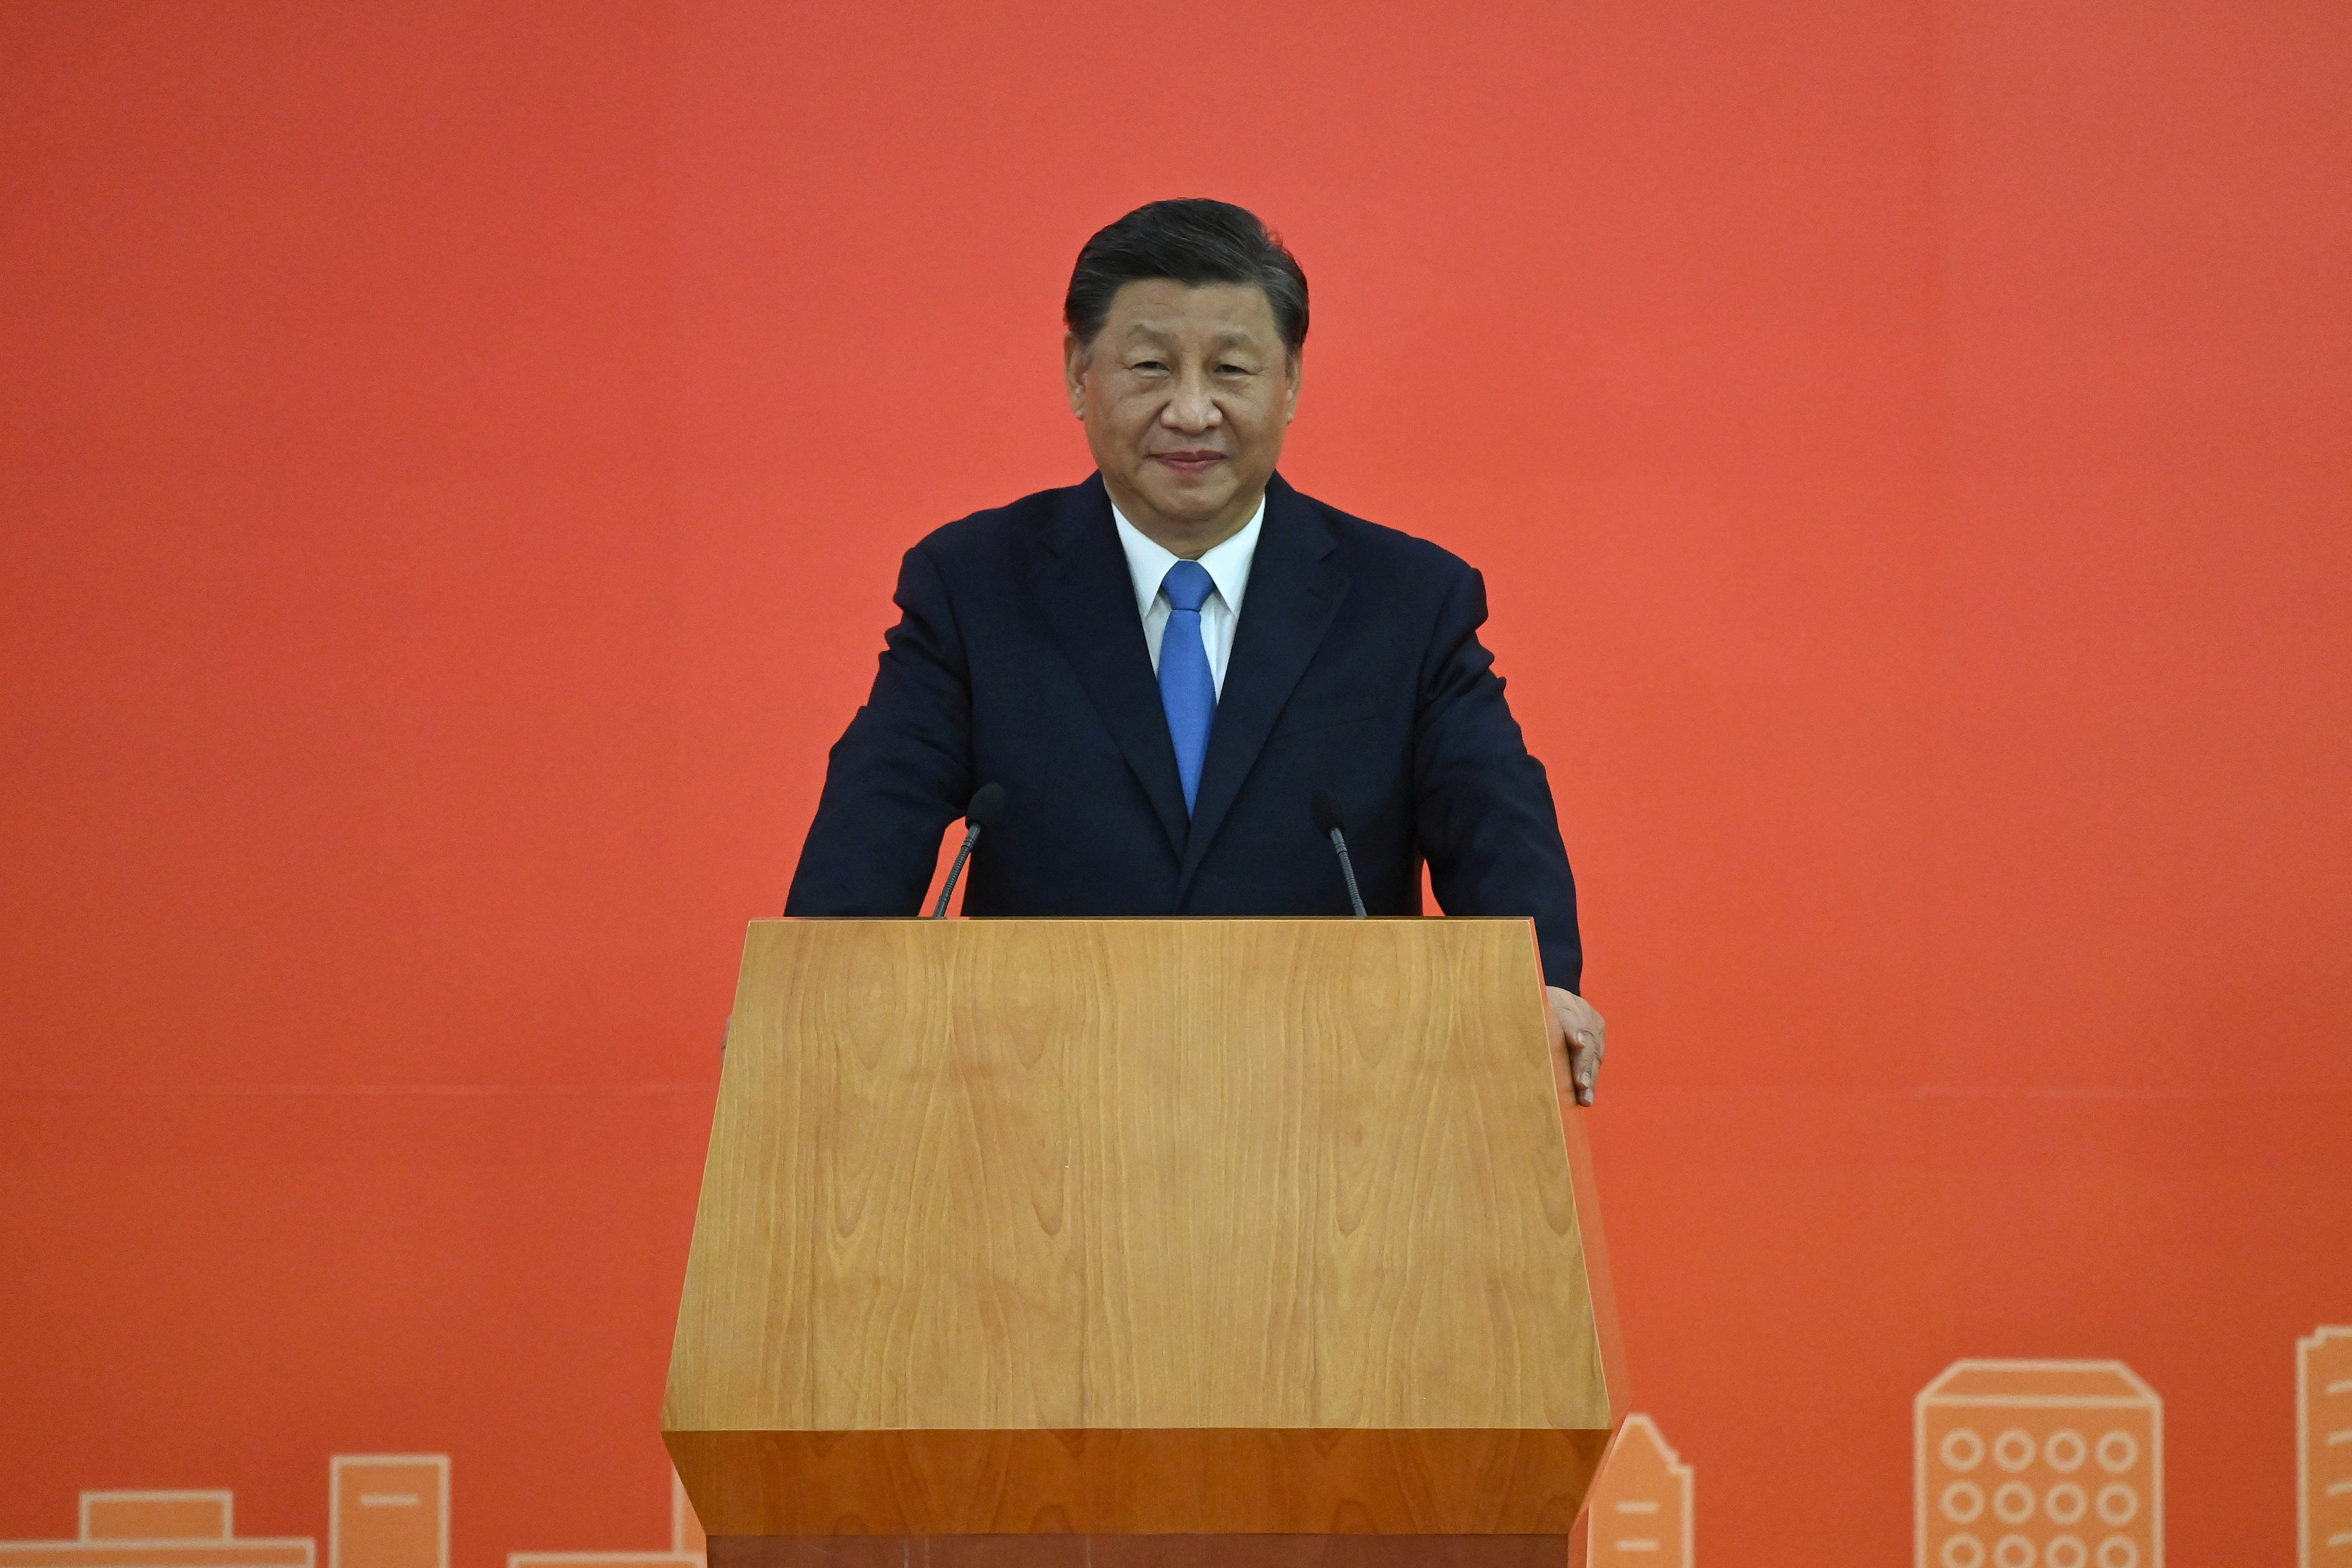 El presidente de China, Xi Jinping, habla a su llegada en tren de alta velocidad, antes del 25º aniversario del traspaso de la antigua colonia británica al régimen chino, en Hong Kong, China, el 30 de junio de 2022. Selim Chtayti/Pool vía REUTERS